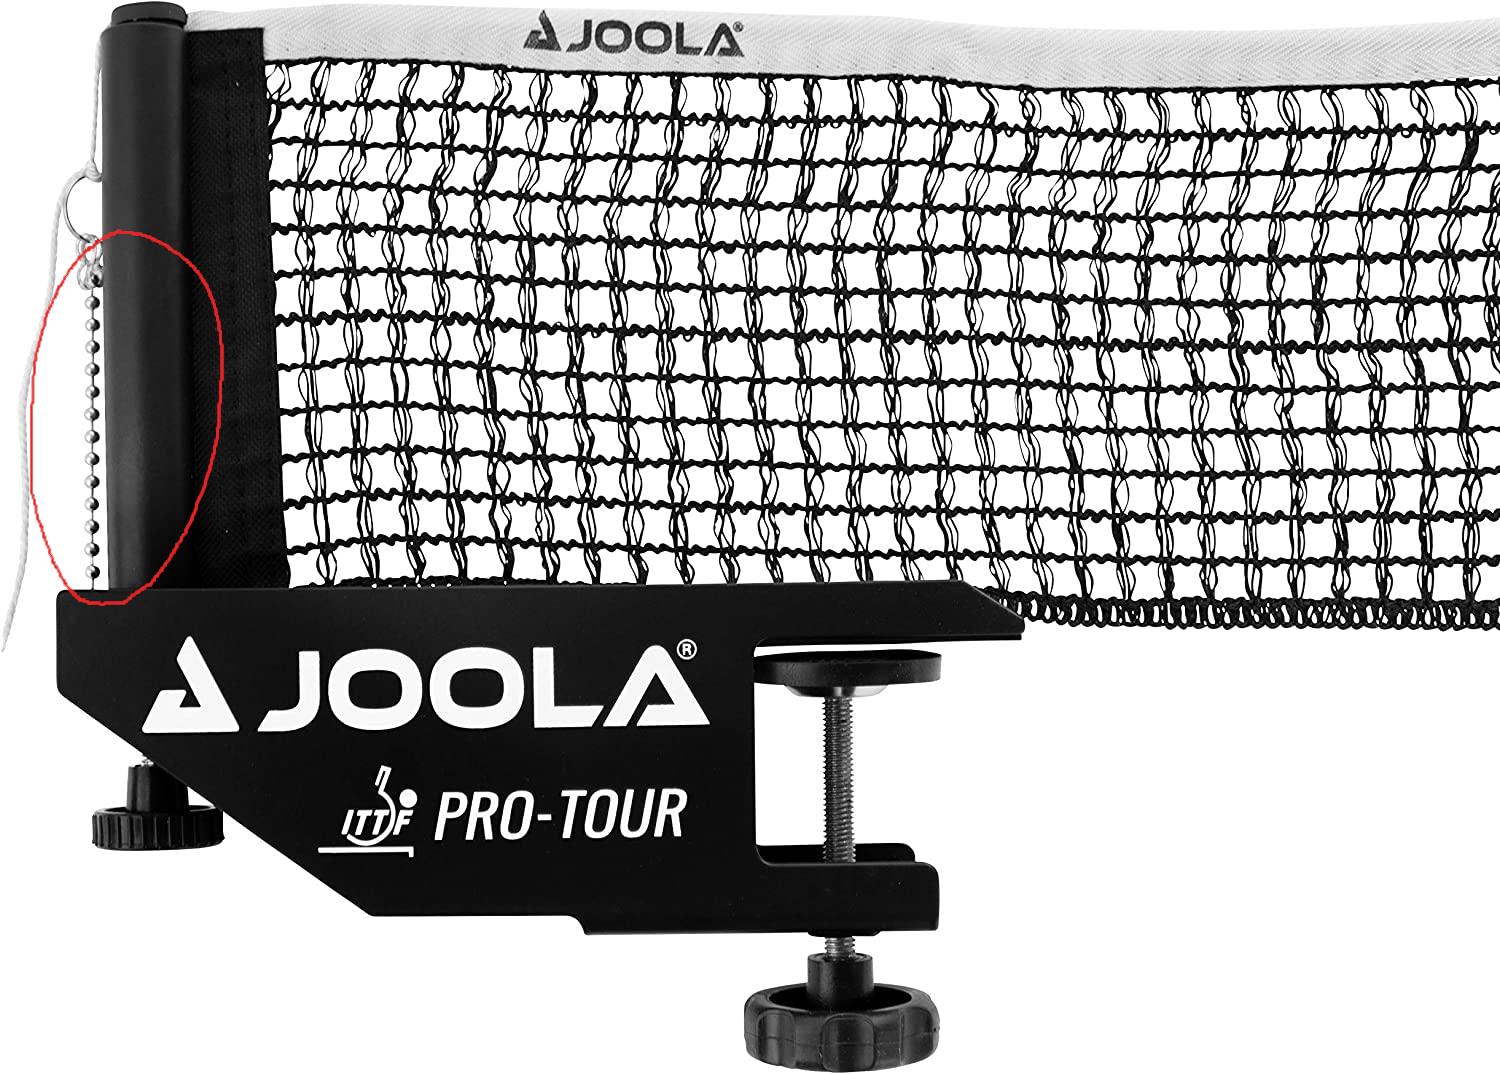 Joola-pro-tour.png